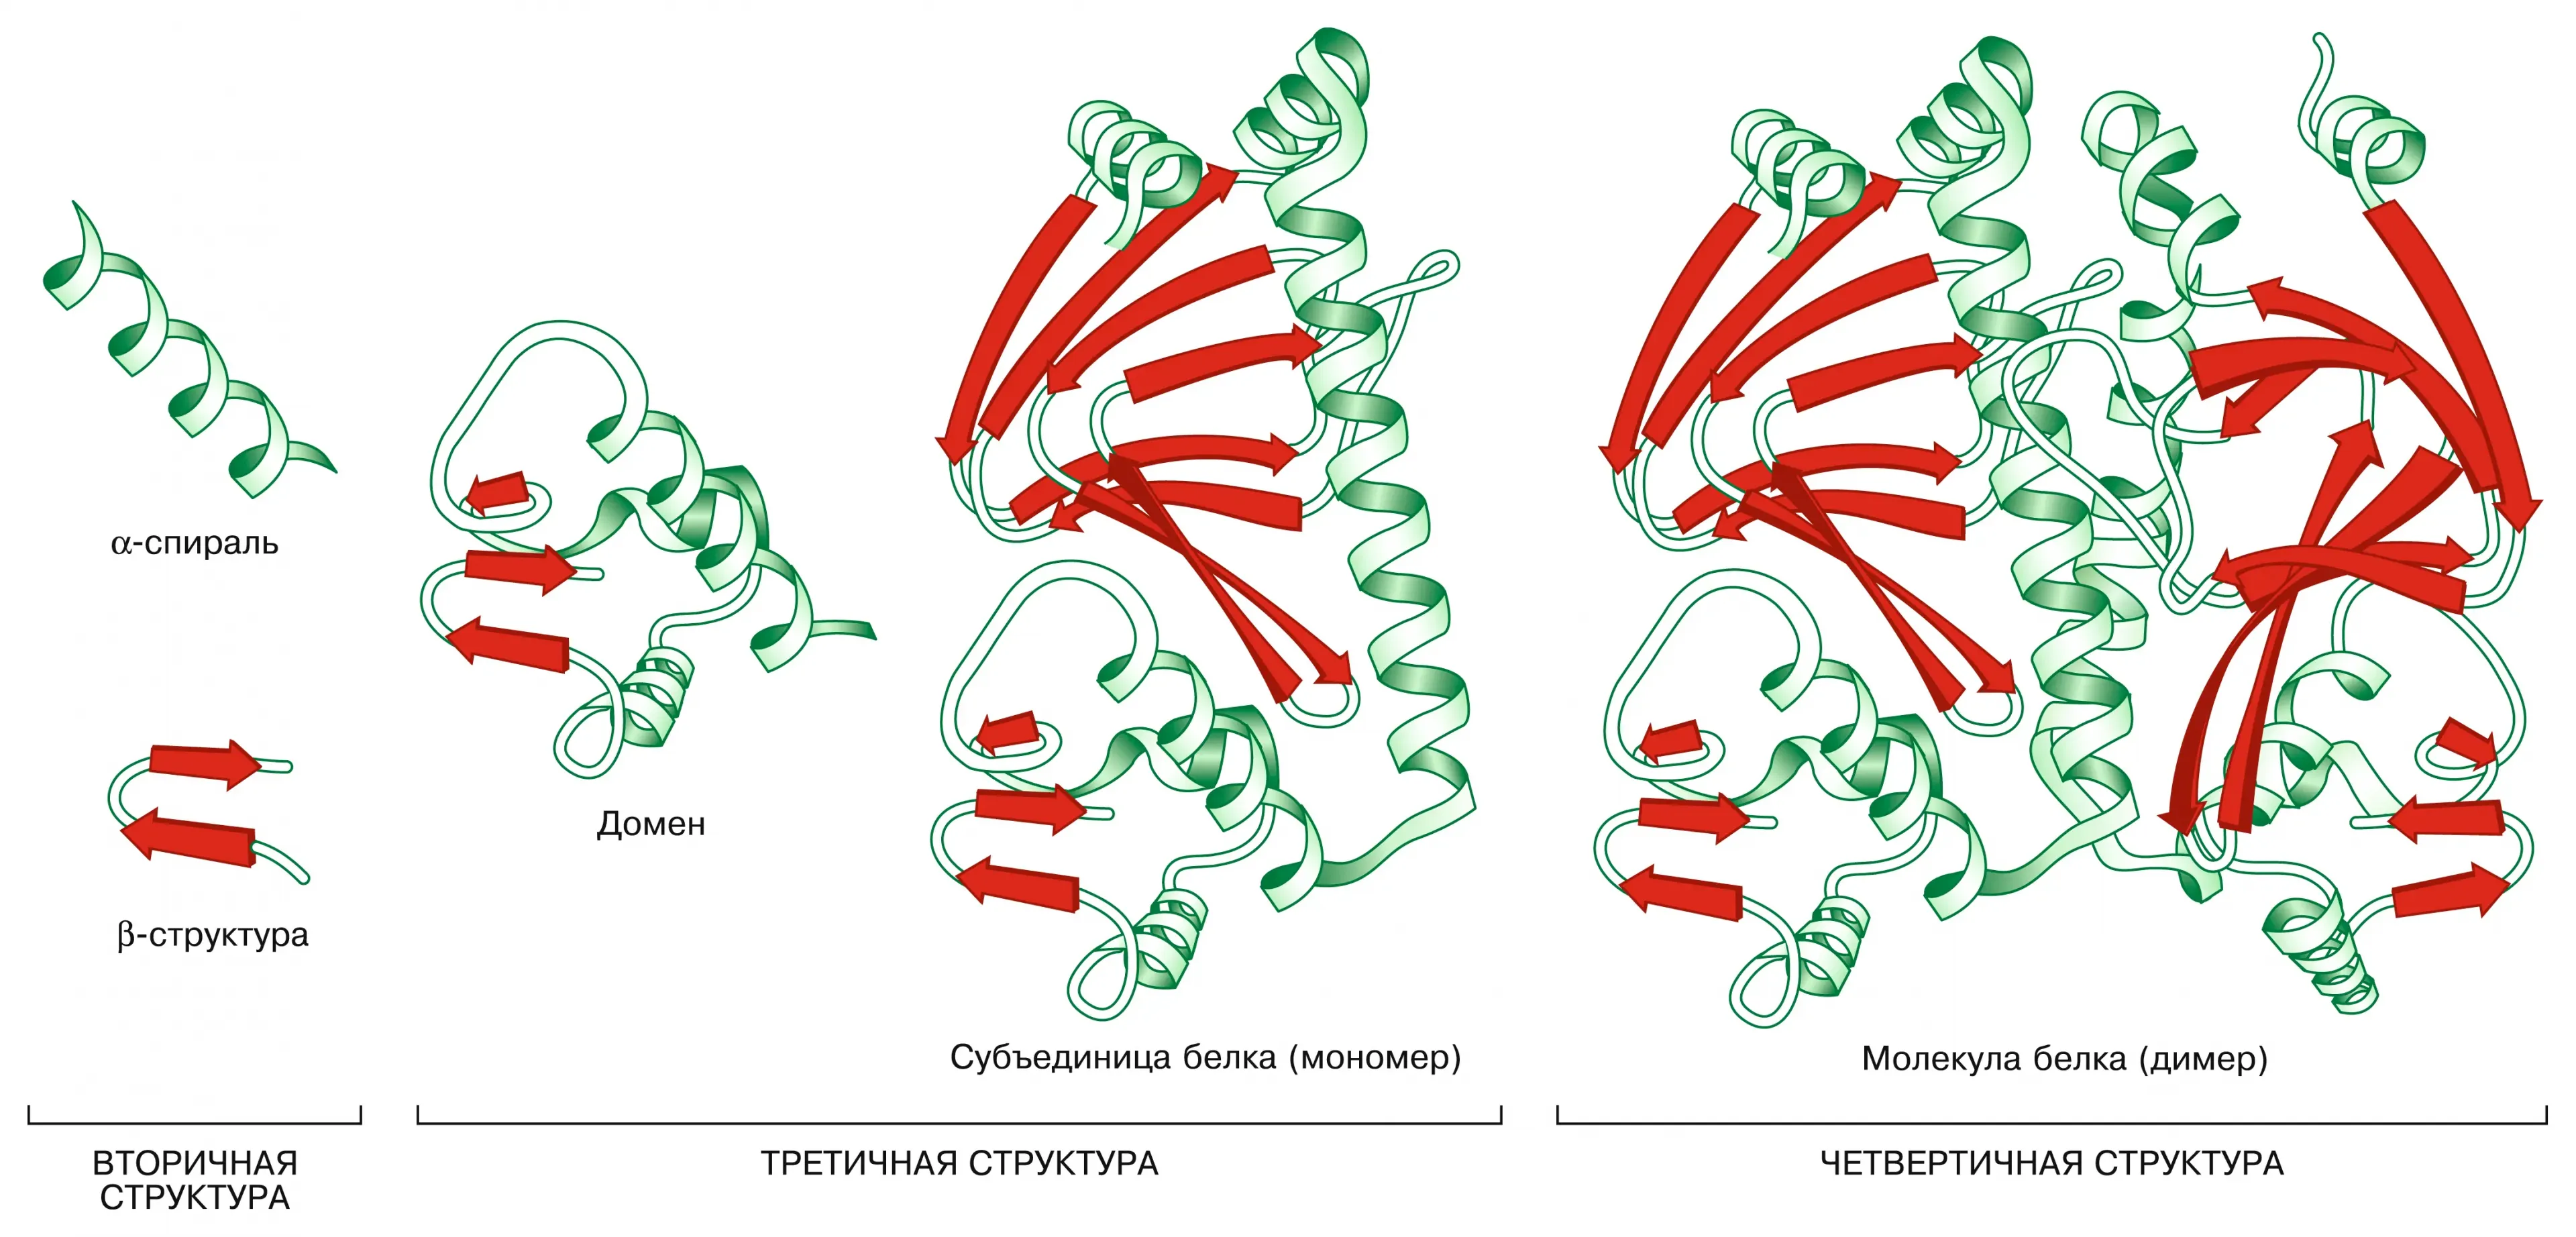 4 организации белка. Белок первичная структура вторичная третичная. Доменная структура белков. Структура белка схема. Пространственная организация белков.